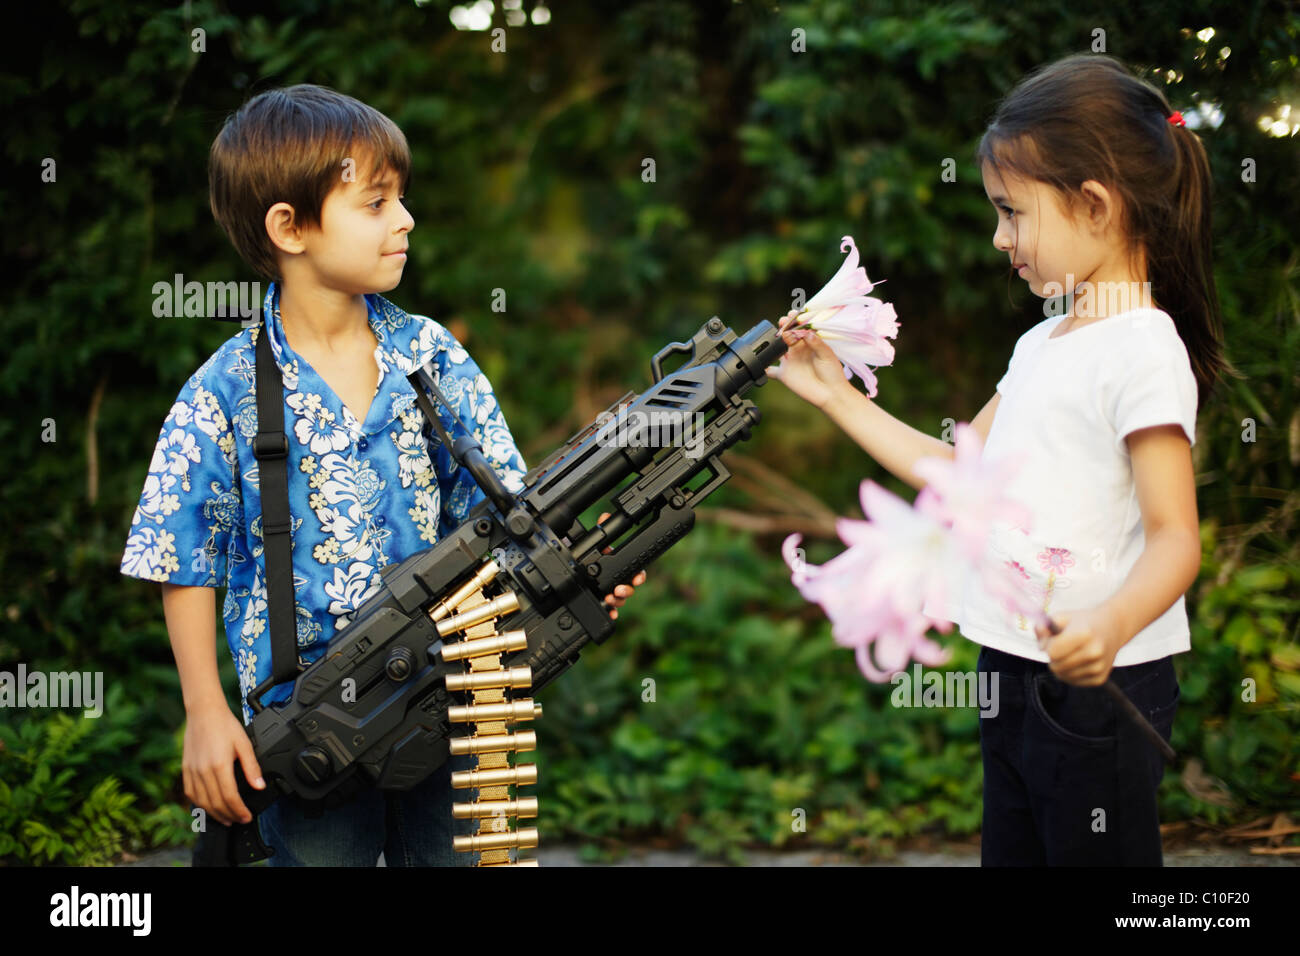 Fünf Jahre altes Mädchen legt Blumen im Lauf ihres Bruders Spielzeug Maschine Pistole Stockfoto